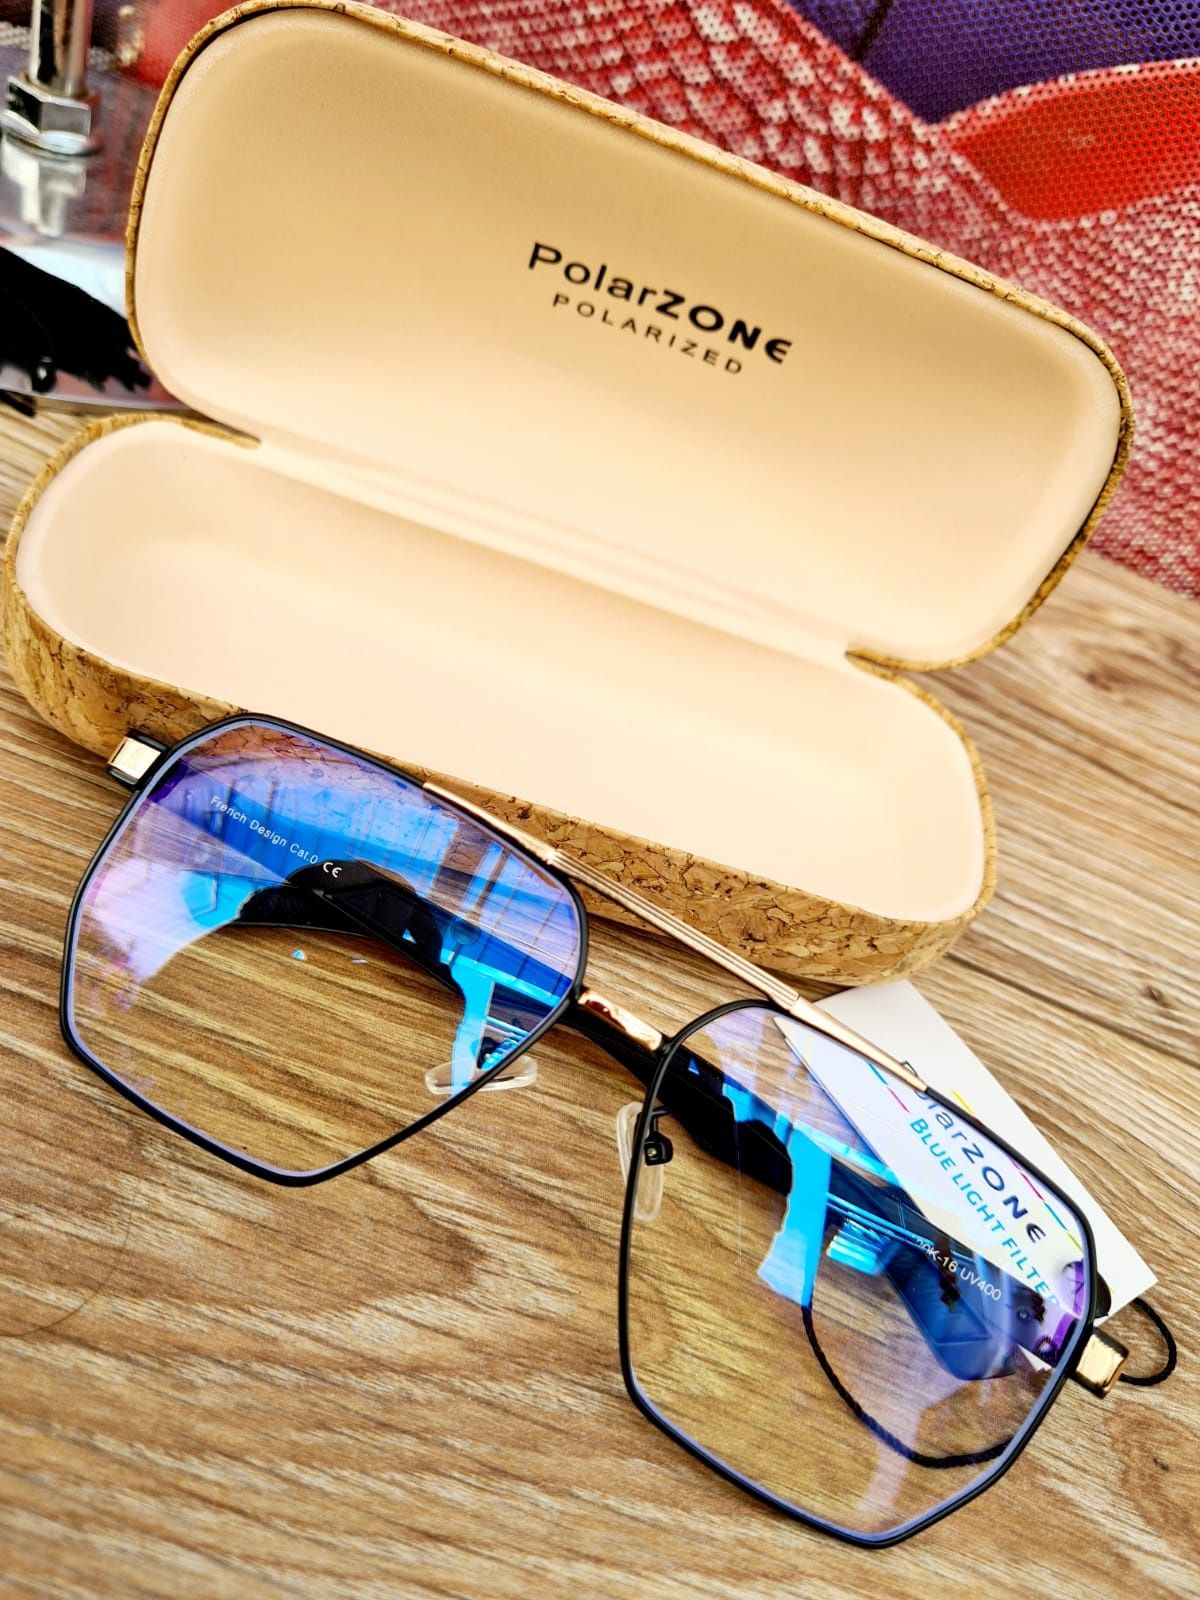 Nowe modne okulary do komputera zerówki męskie marki Polarzone